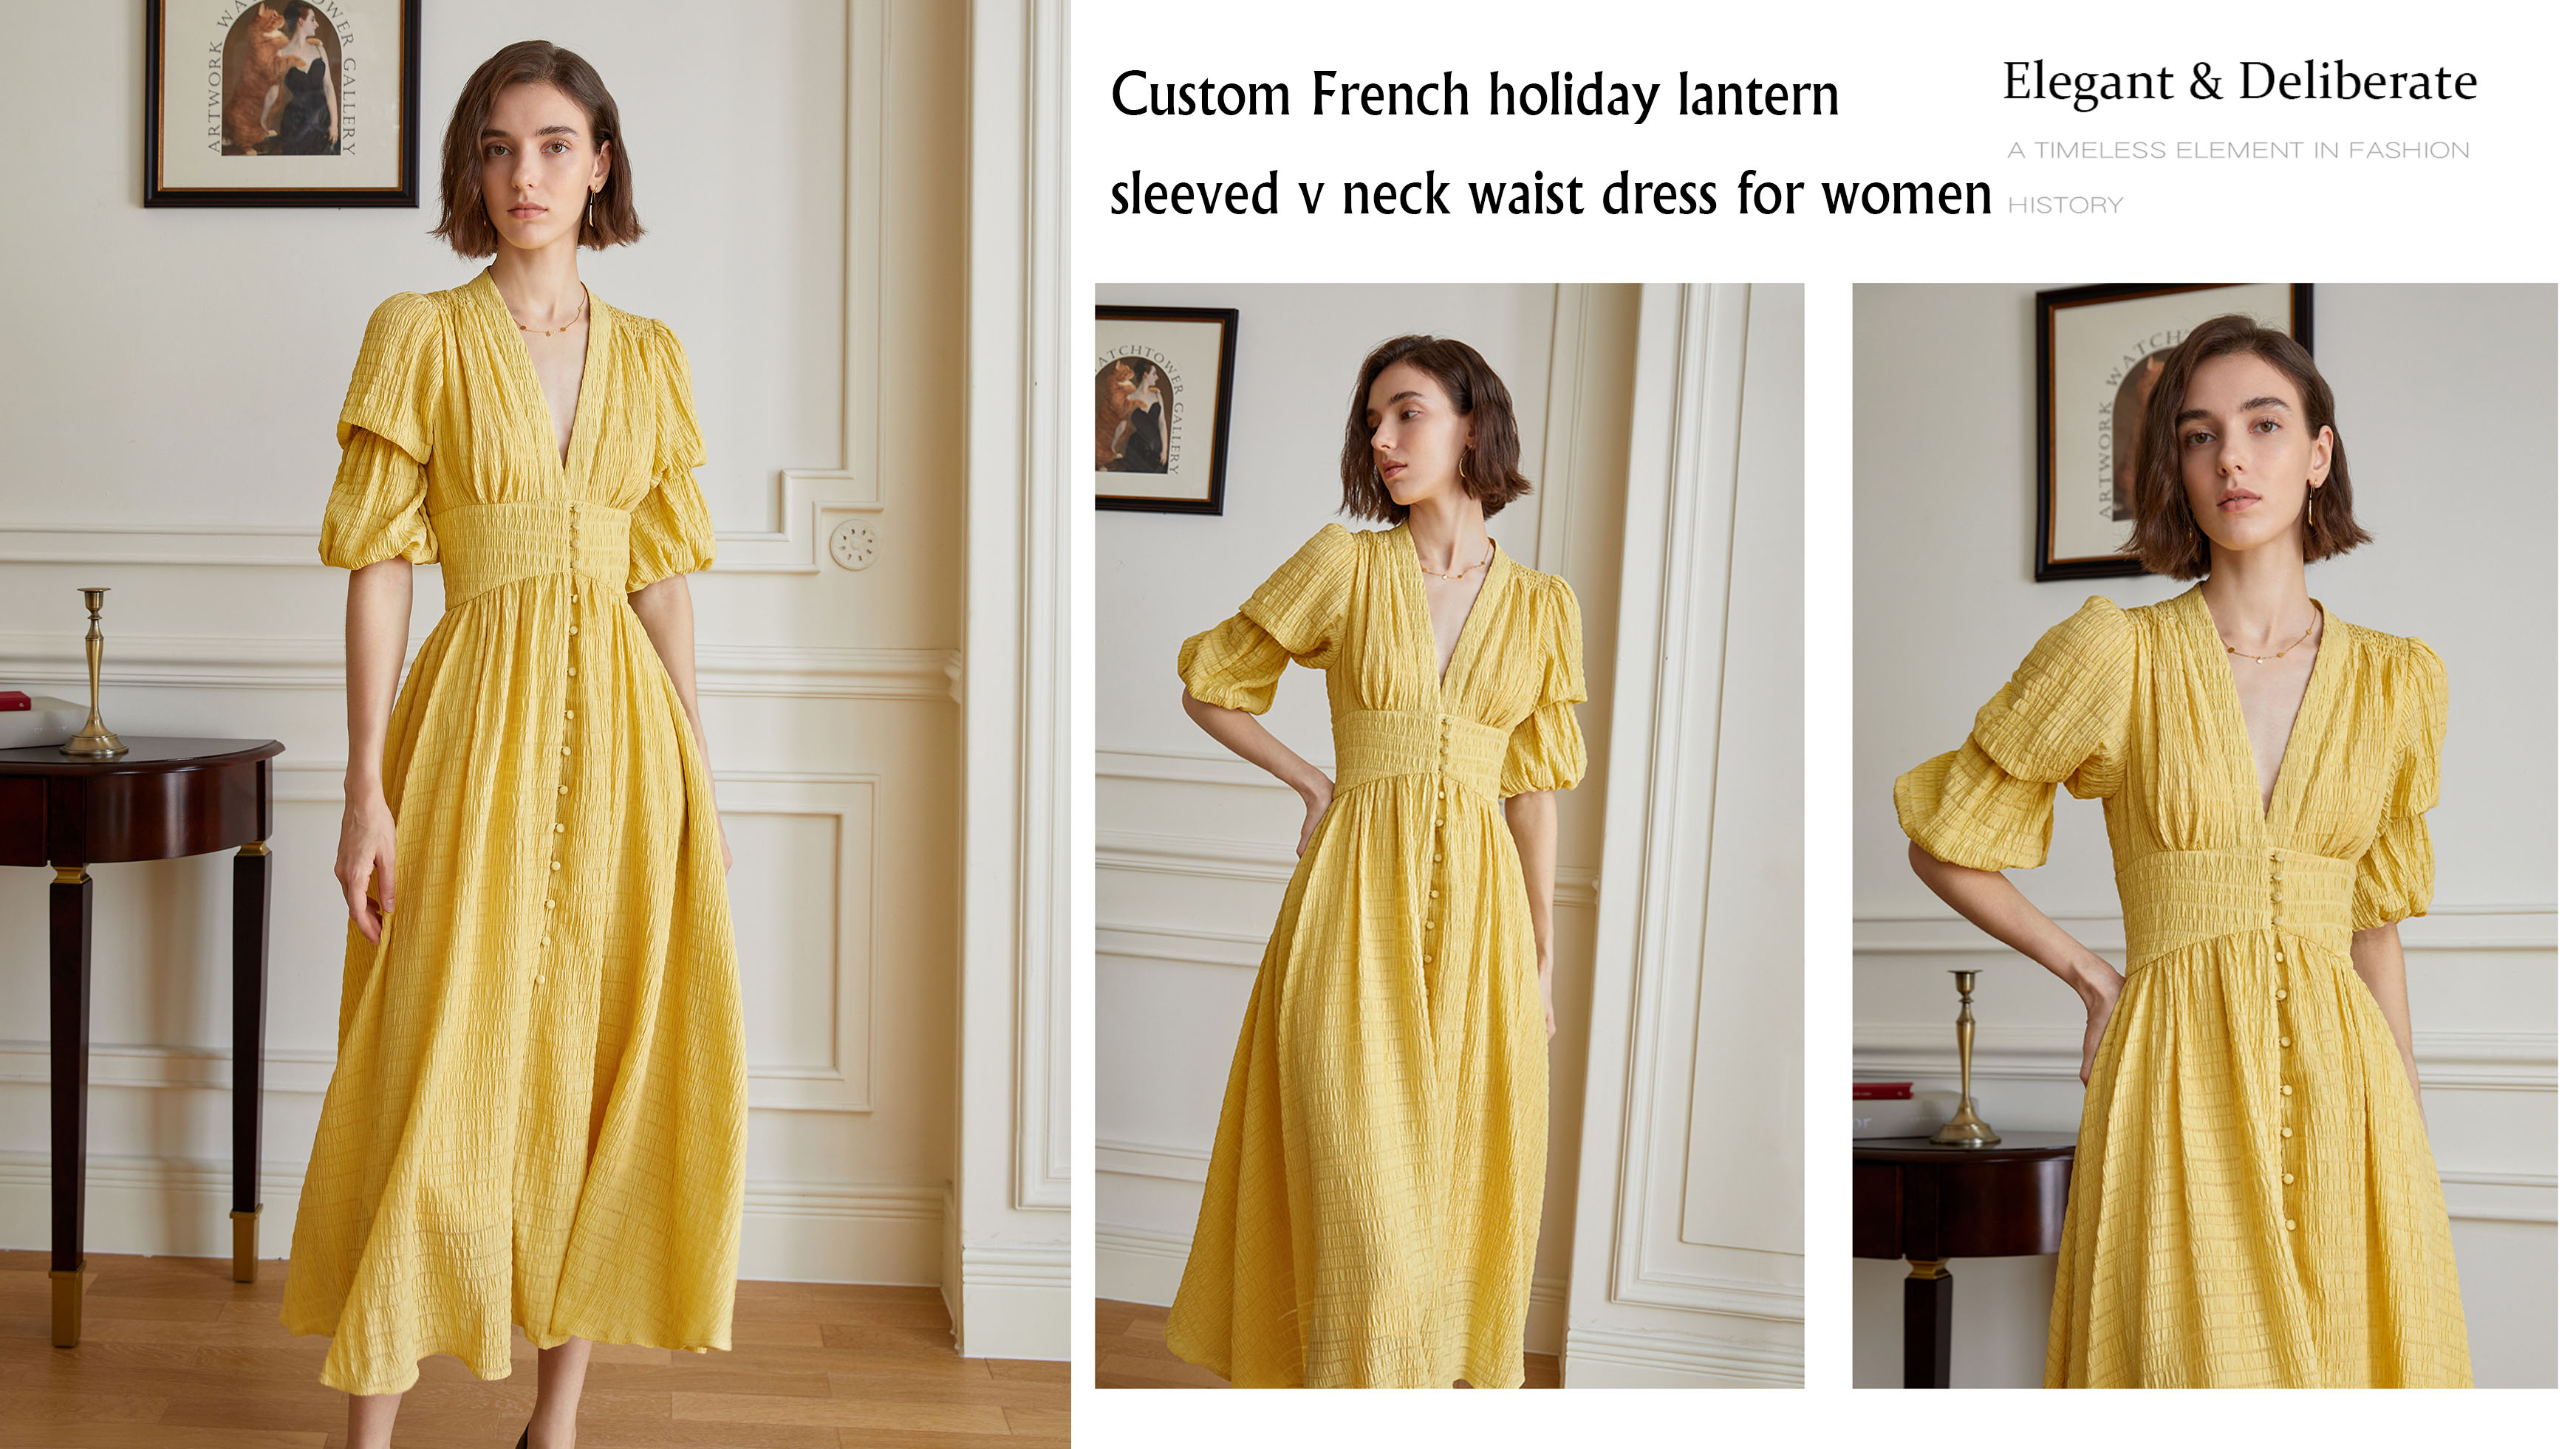 Custom French holiday lantern sleeved v neck waist dress for women